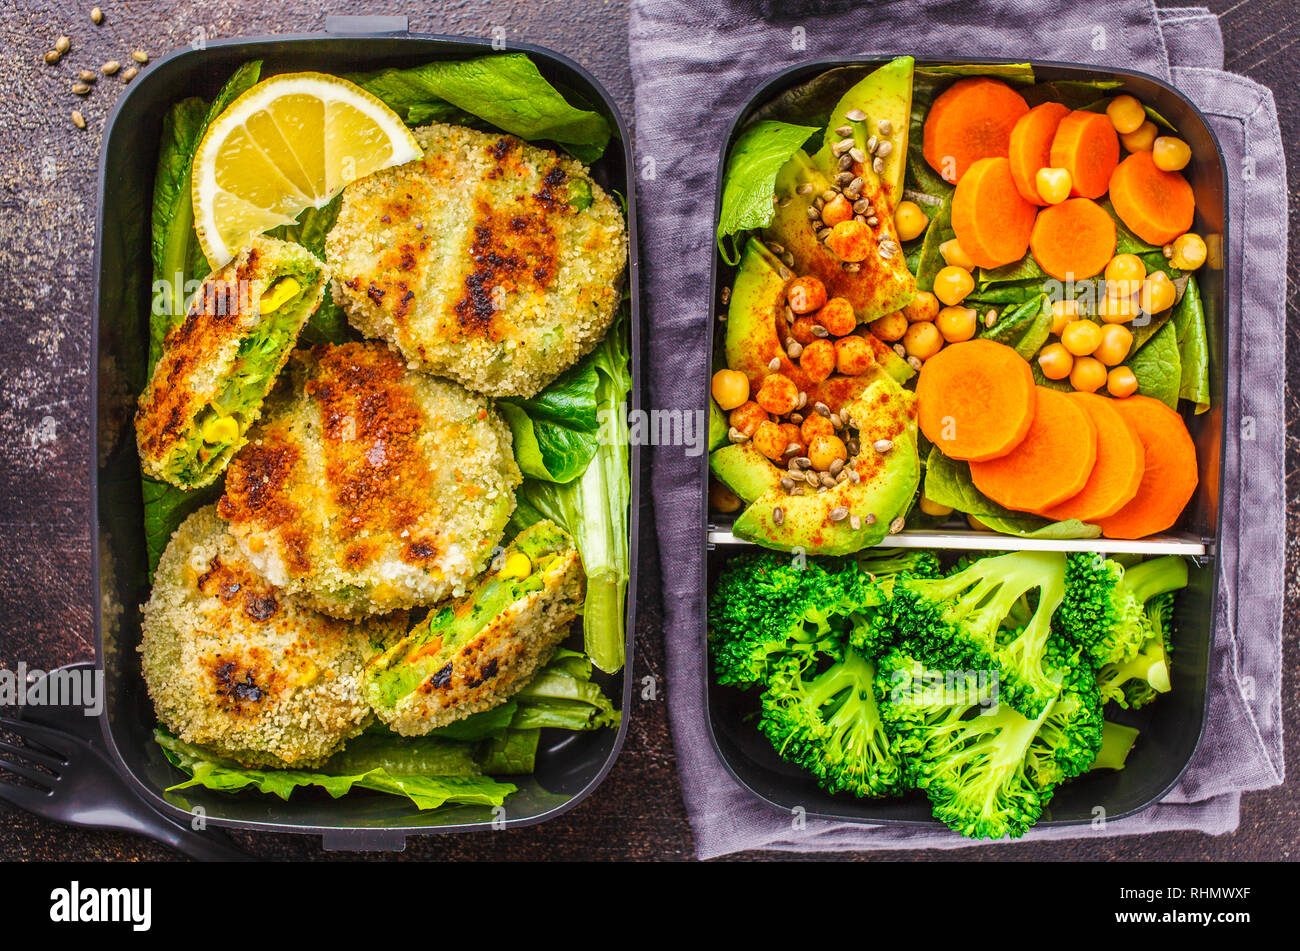 Préparation des repas sains avec des contenants green burgers, le brocoli, les pois chiches et salade verte sur fond sombre. Banque D'Images